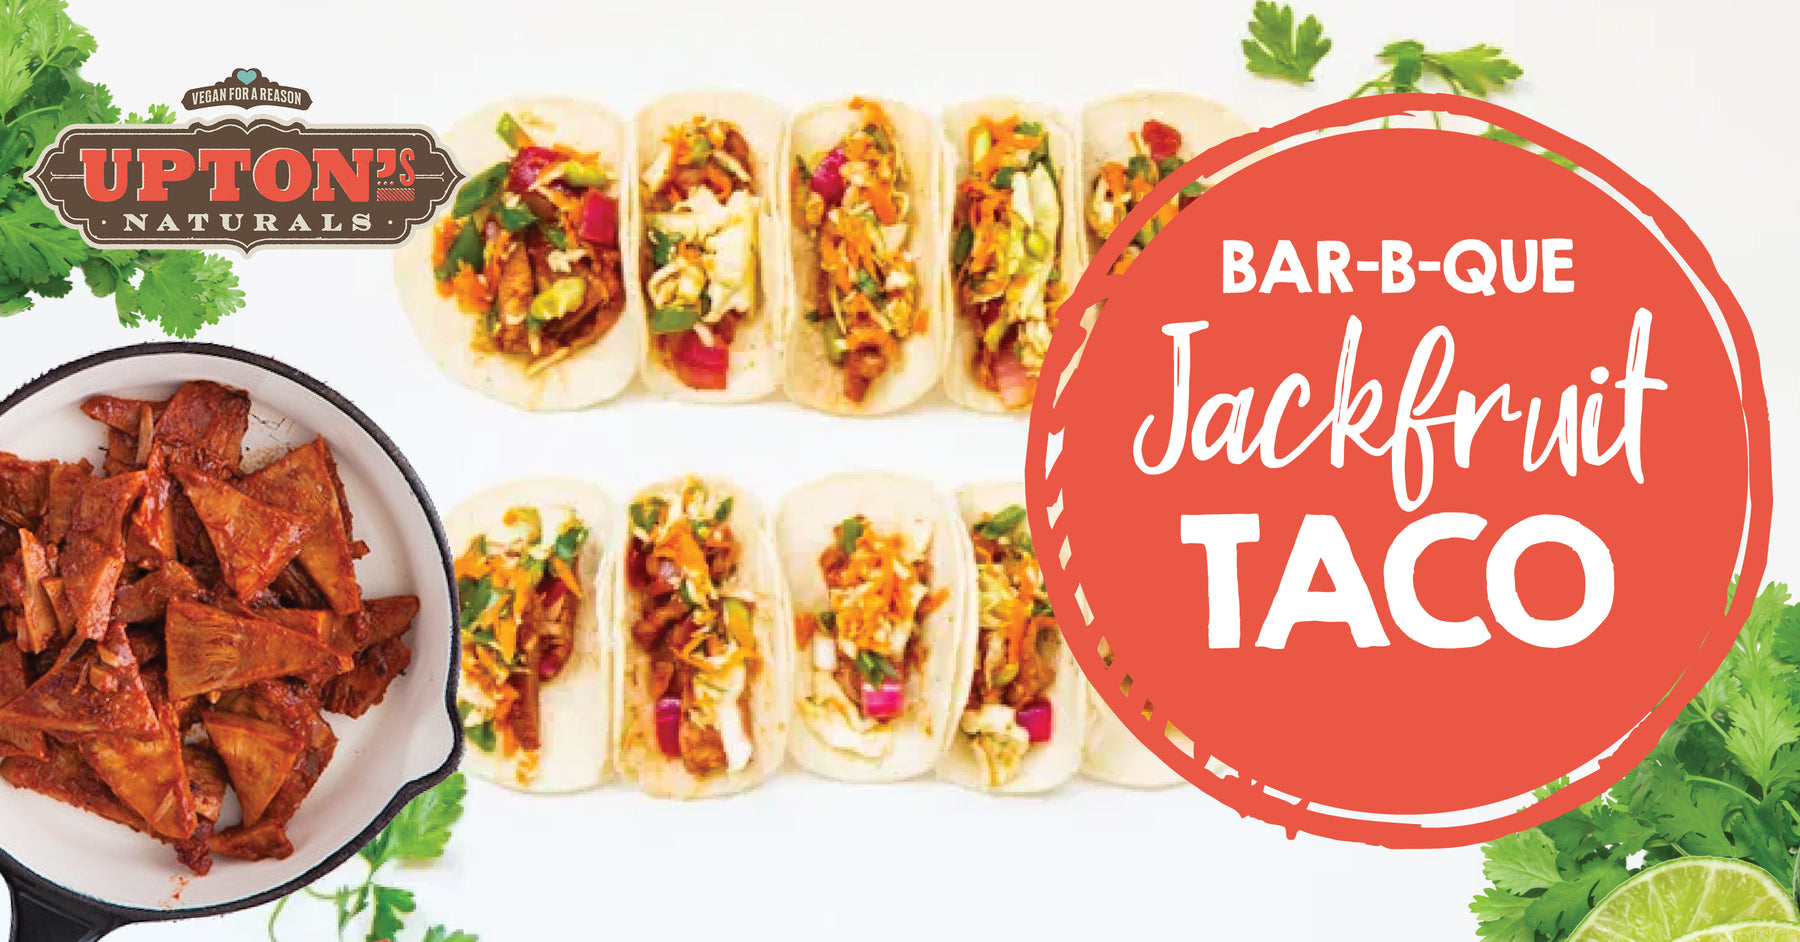 Upton's Bar-B-Que Jackfruit Tacos